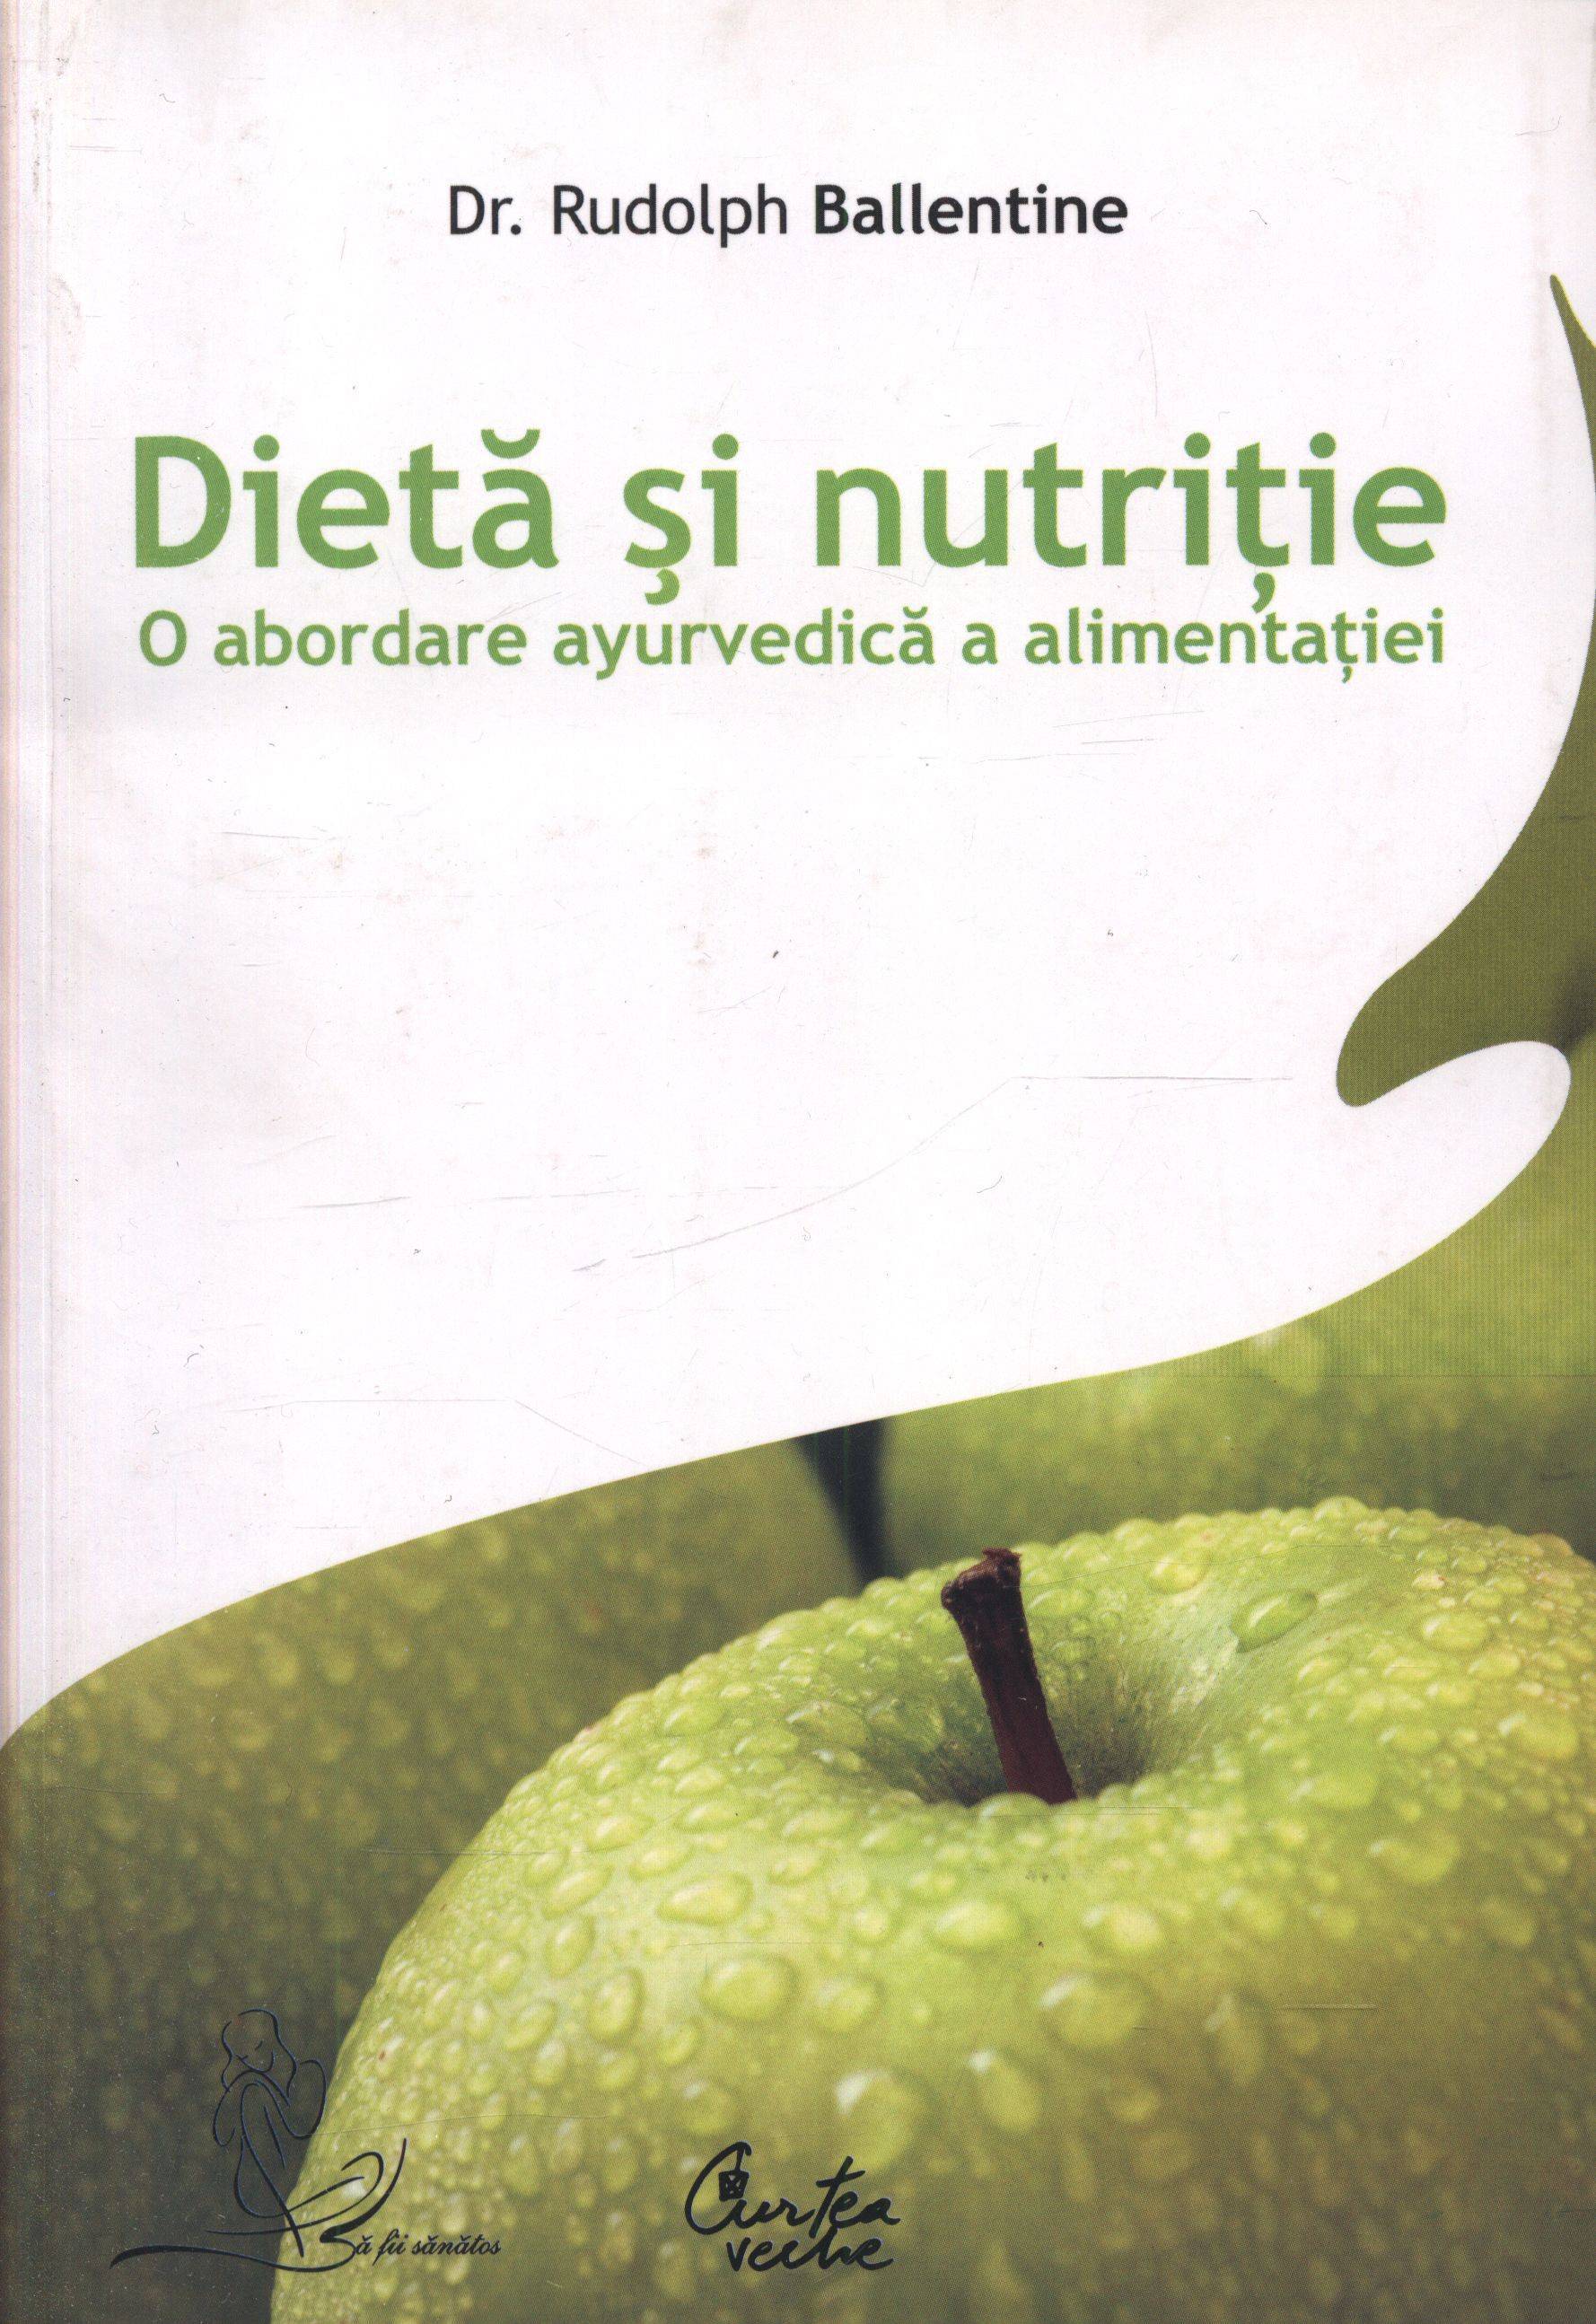 Dieta si nutritie - carte - Rudolph Ballentine